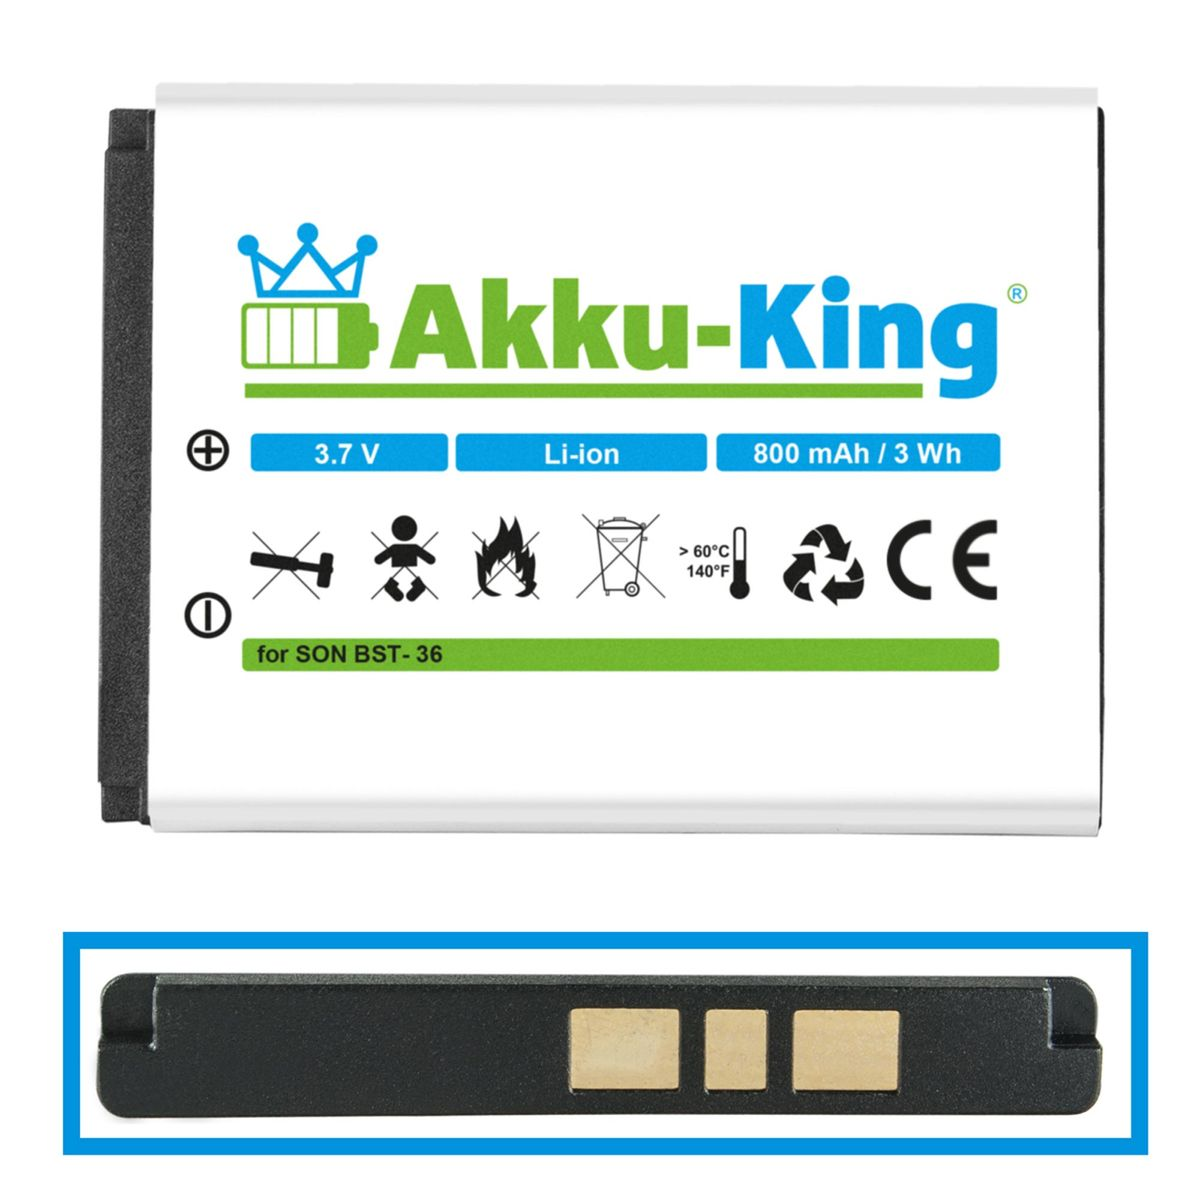 800mAh AKKU-KING Li-Ion kompatibel Sony-Ericsson mit Handy-Akku, Akku BST-36 Volt, 3.7